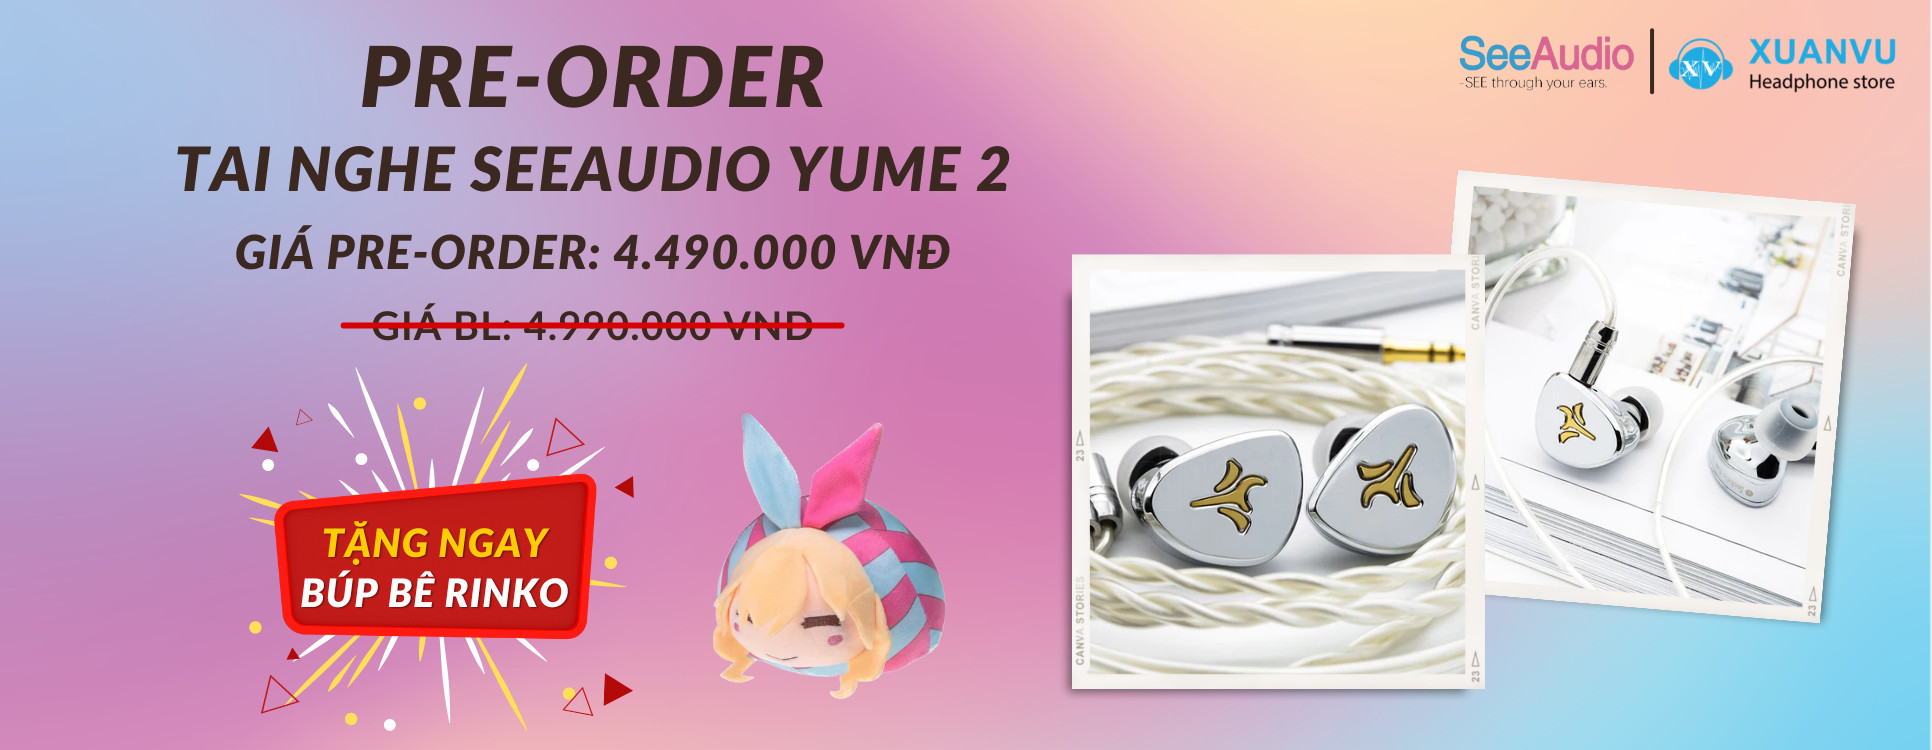 Pre-order tai nghe SeeAudio Yume 2